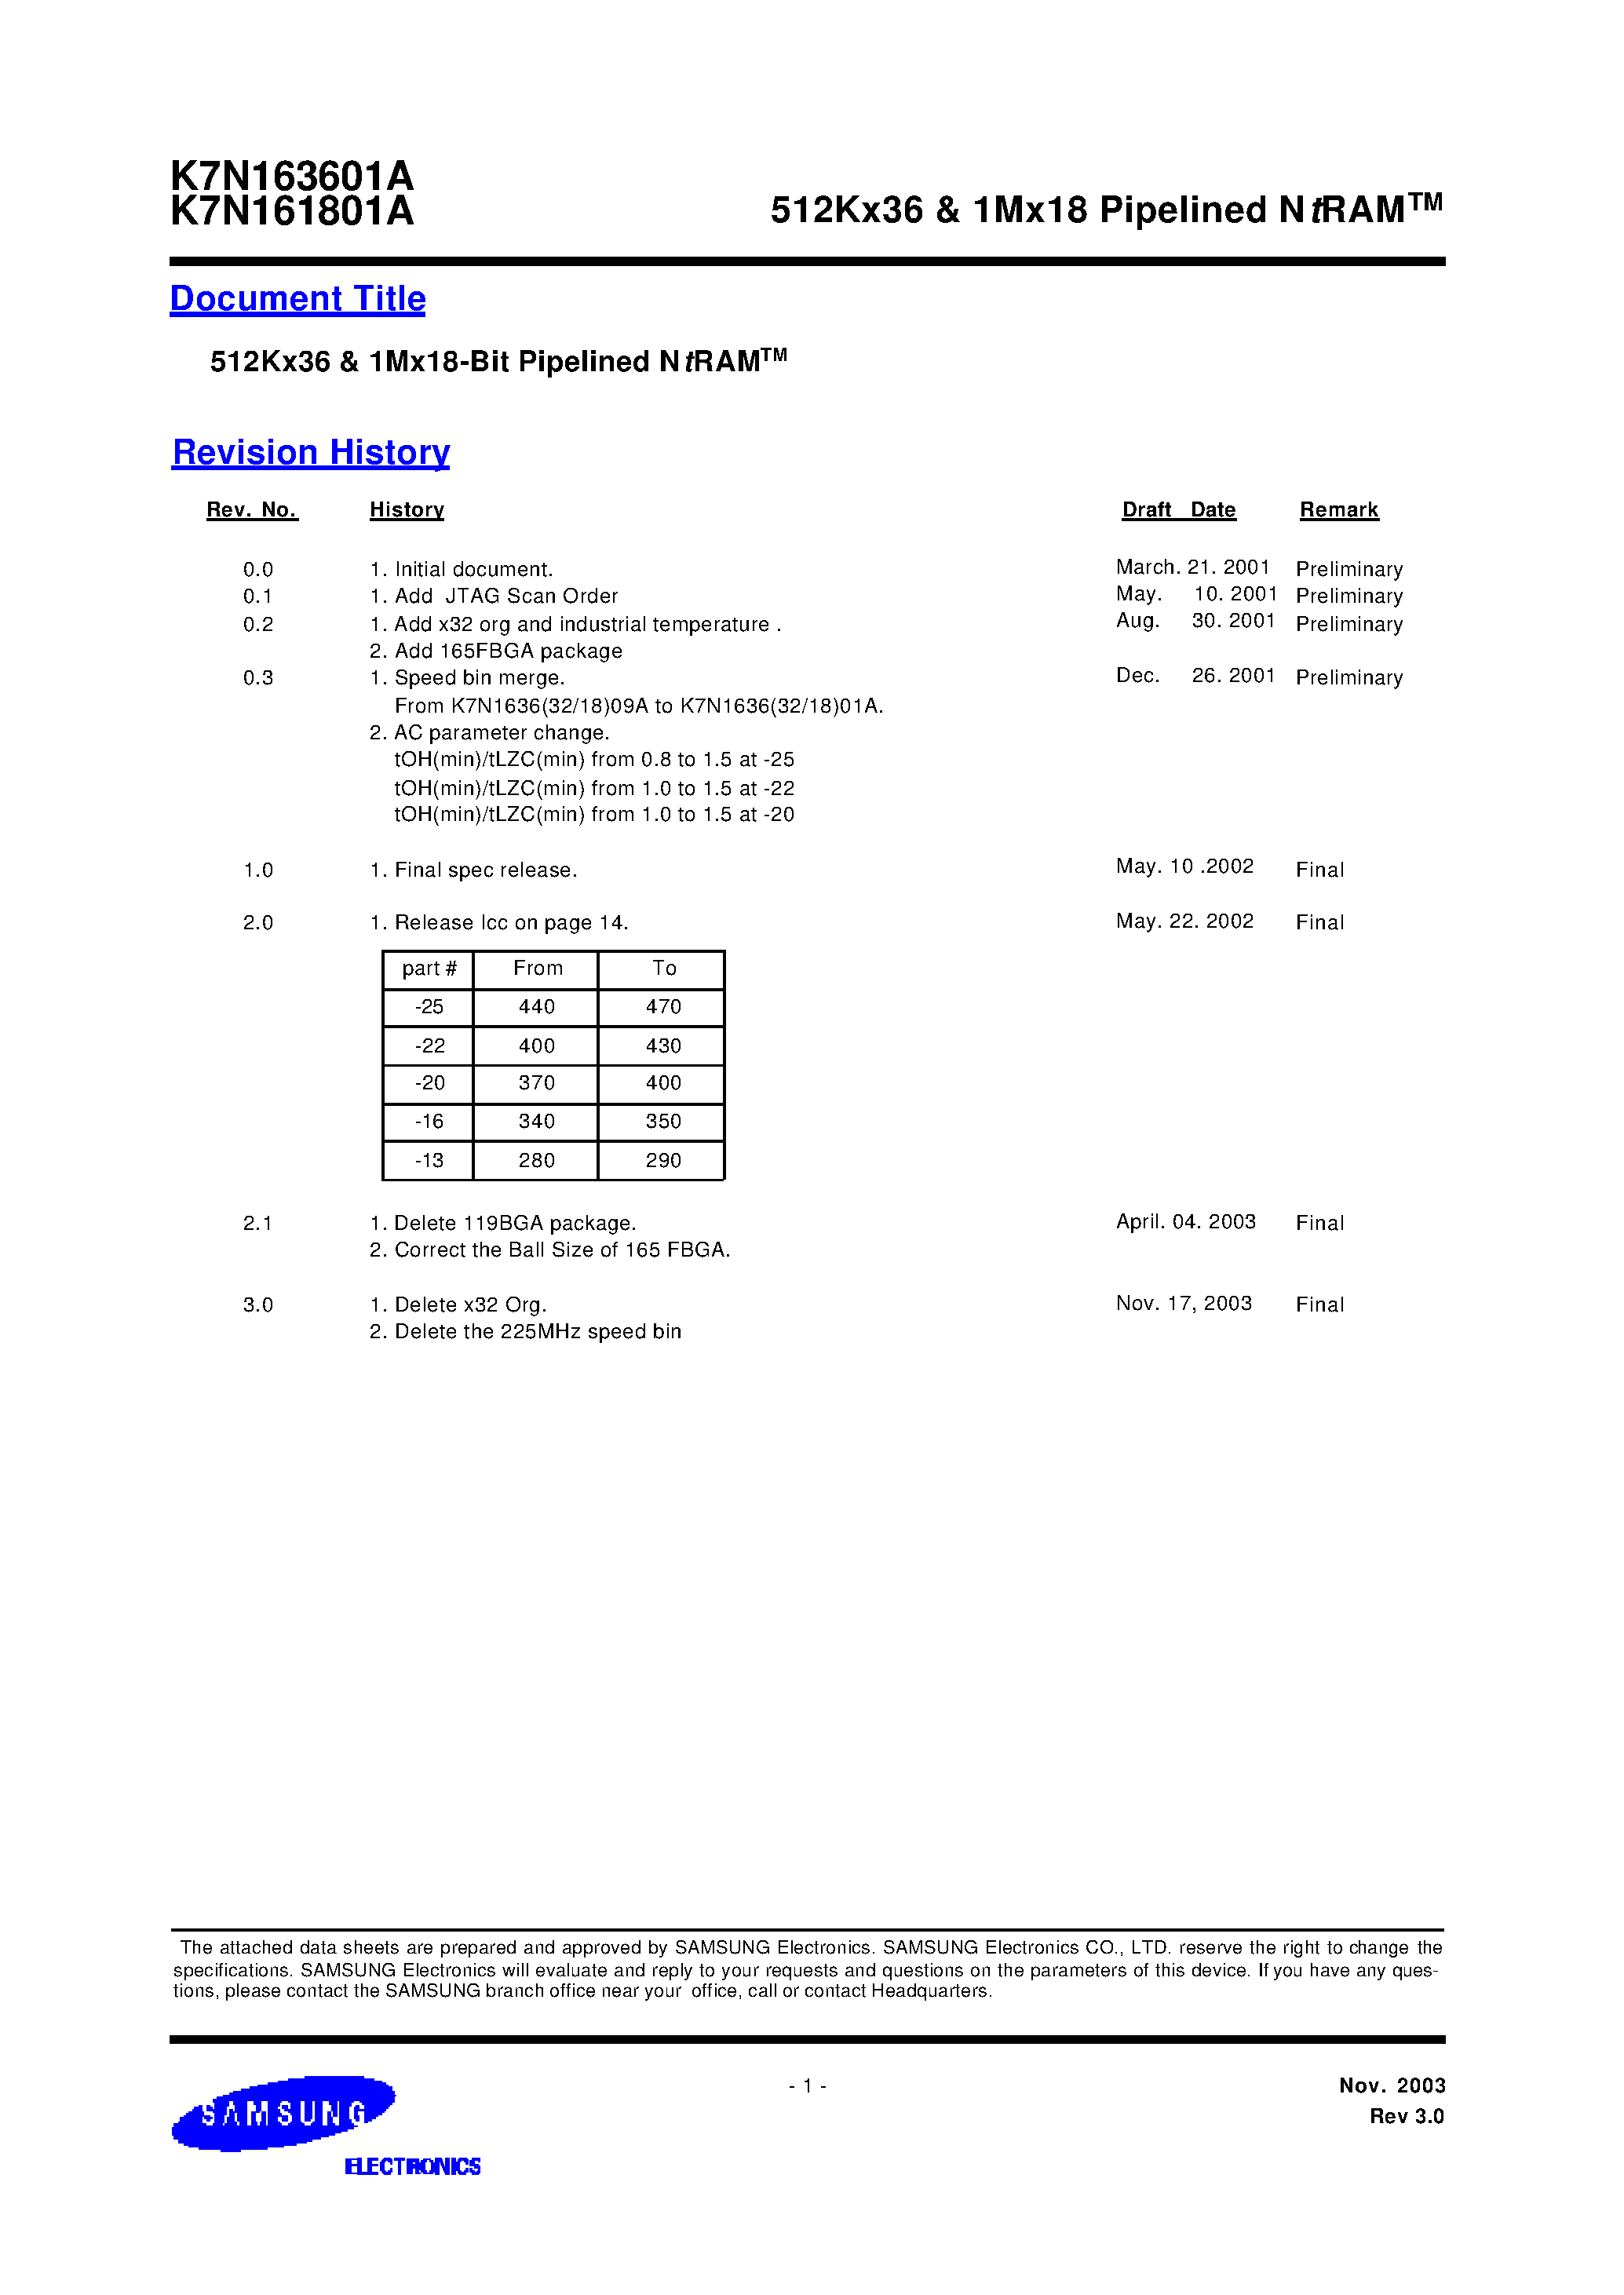 Даташит K7N161801A-Q(F)C(I)25 - 512Kx36 & 1Mx18 Pipelined NtRAM страница 1